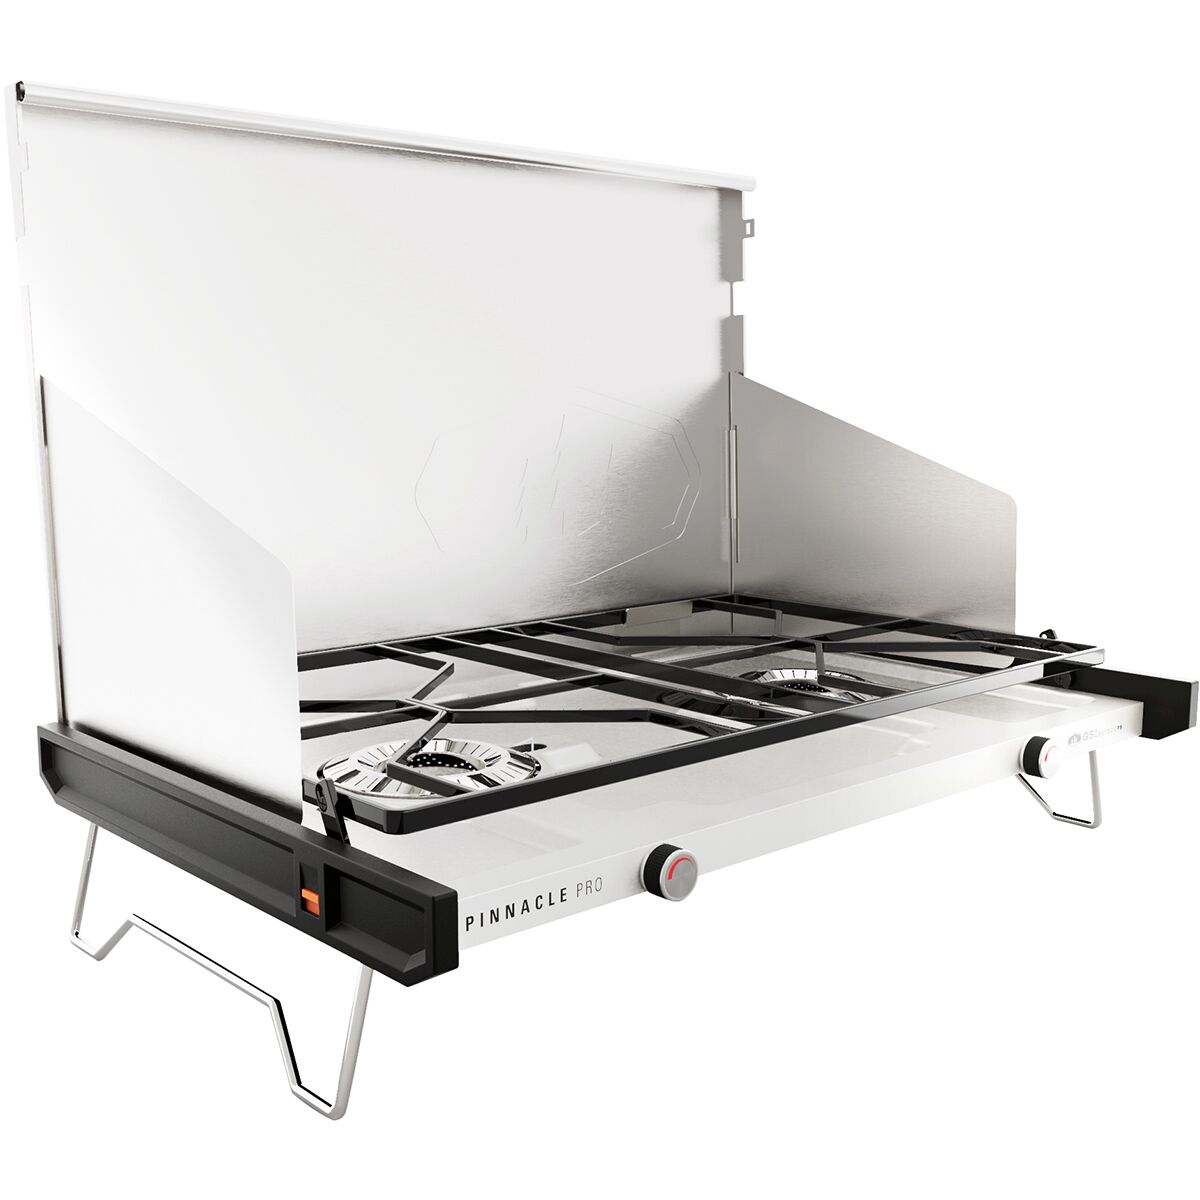 GSI Outdoors Pinnacle Pro camping stove